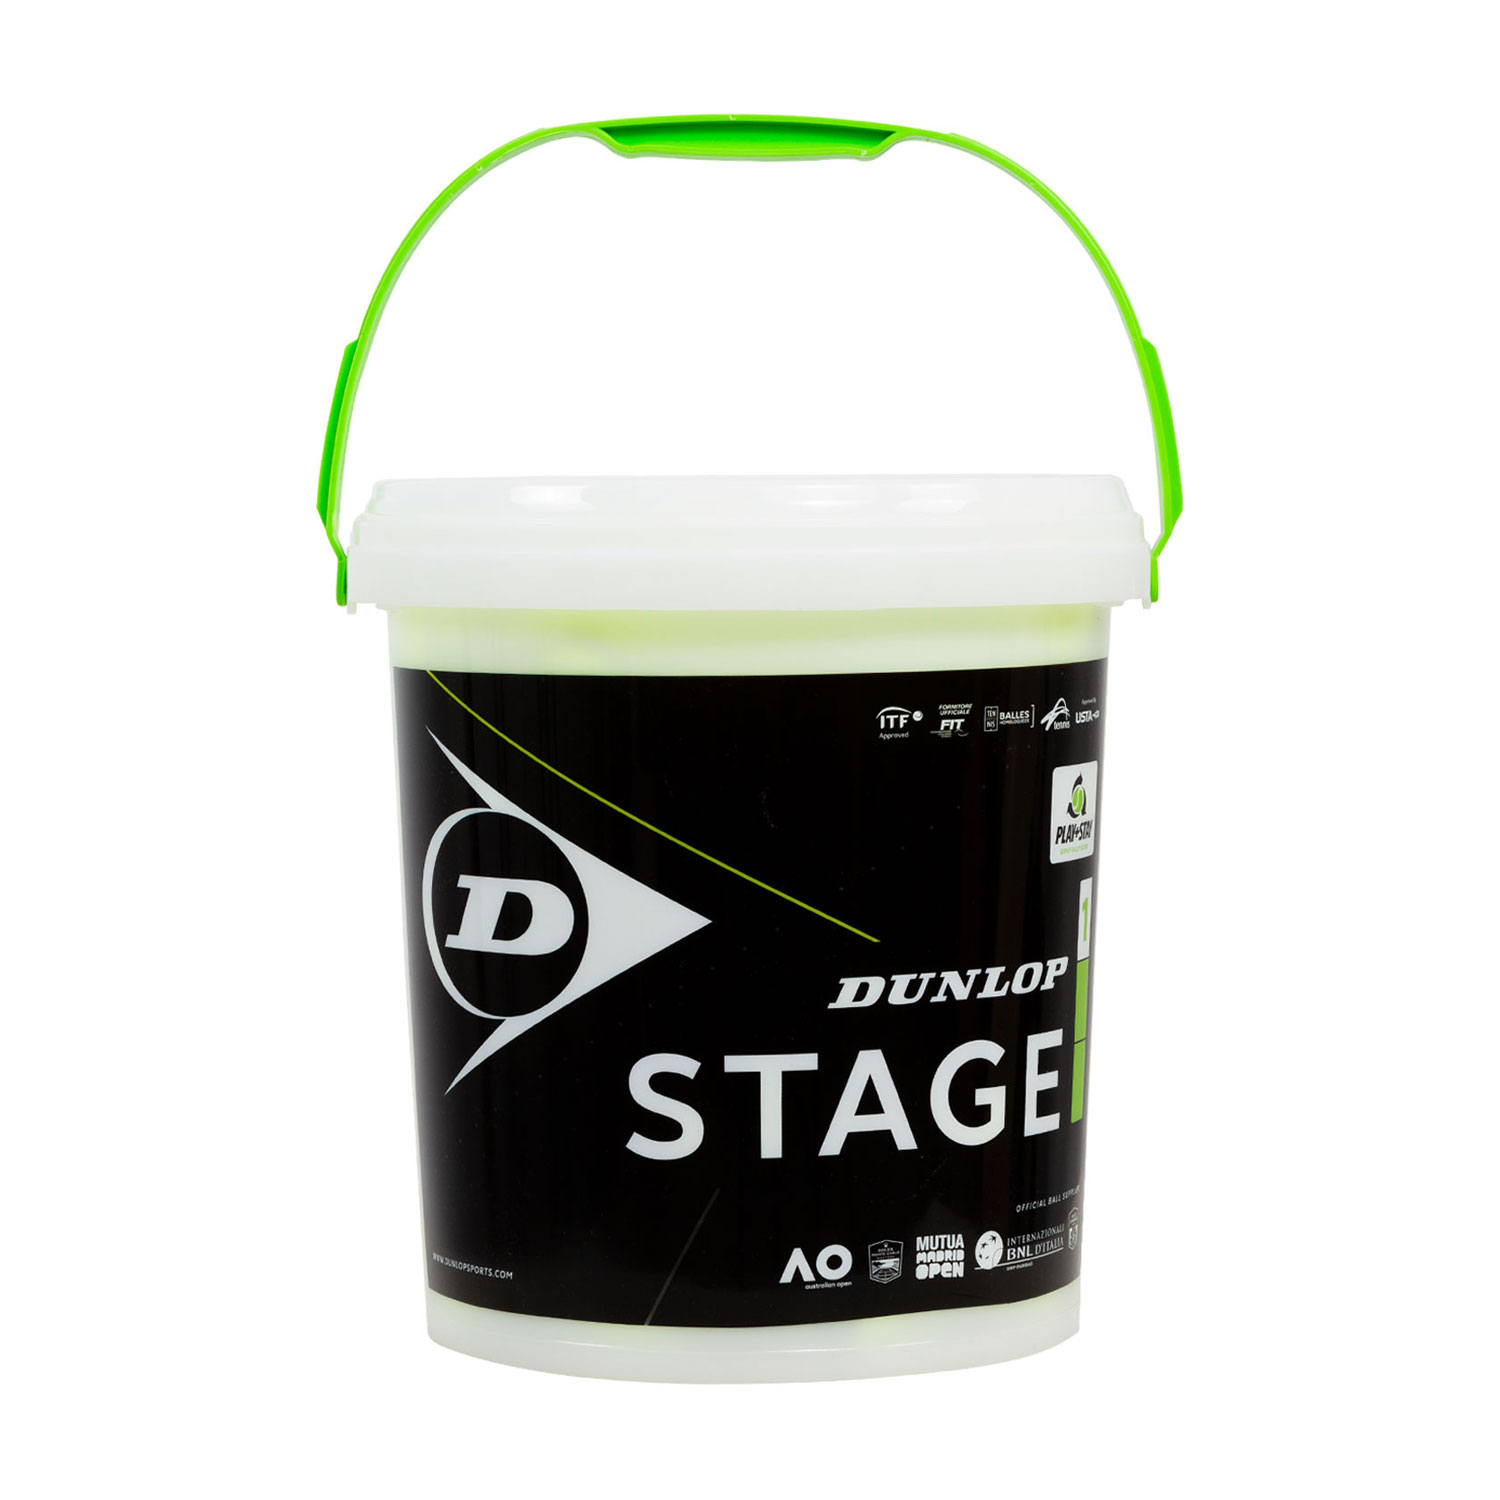 Dunlop Stage 1 Green - Barril de 60 Pelotas